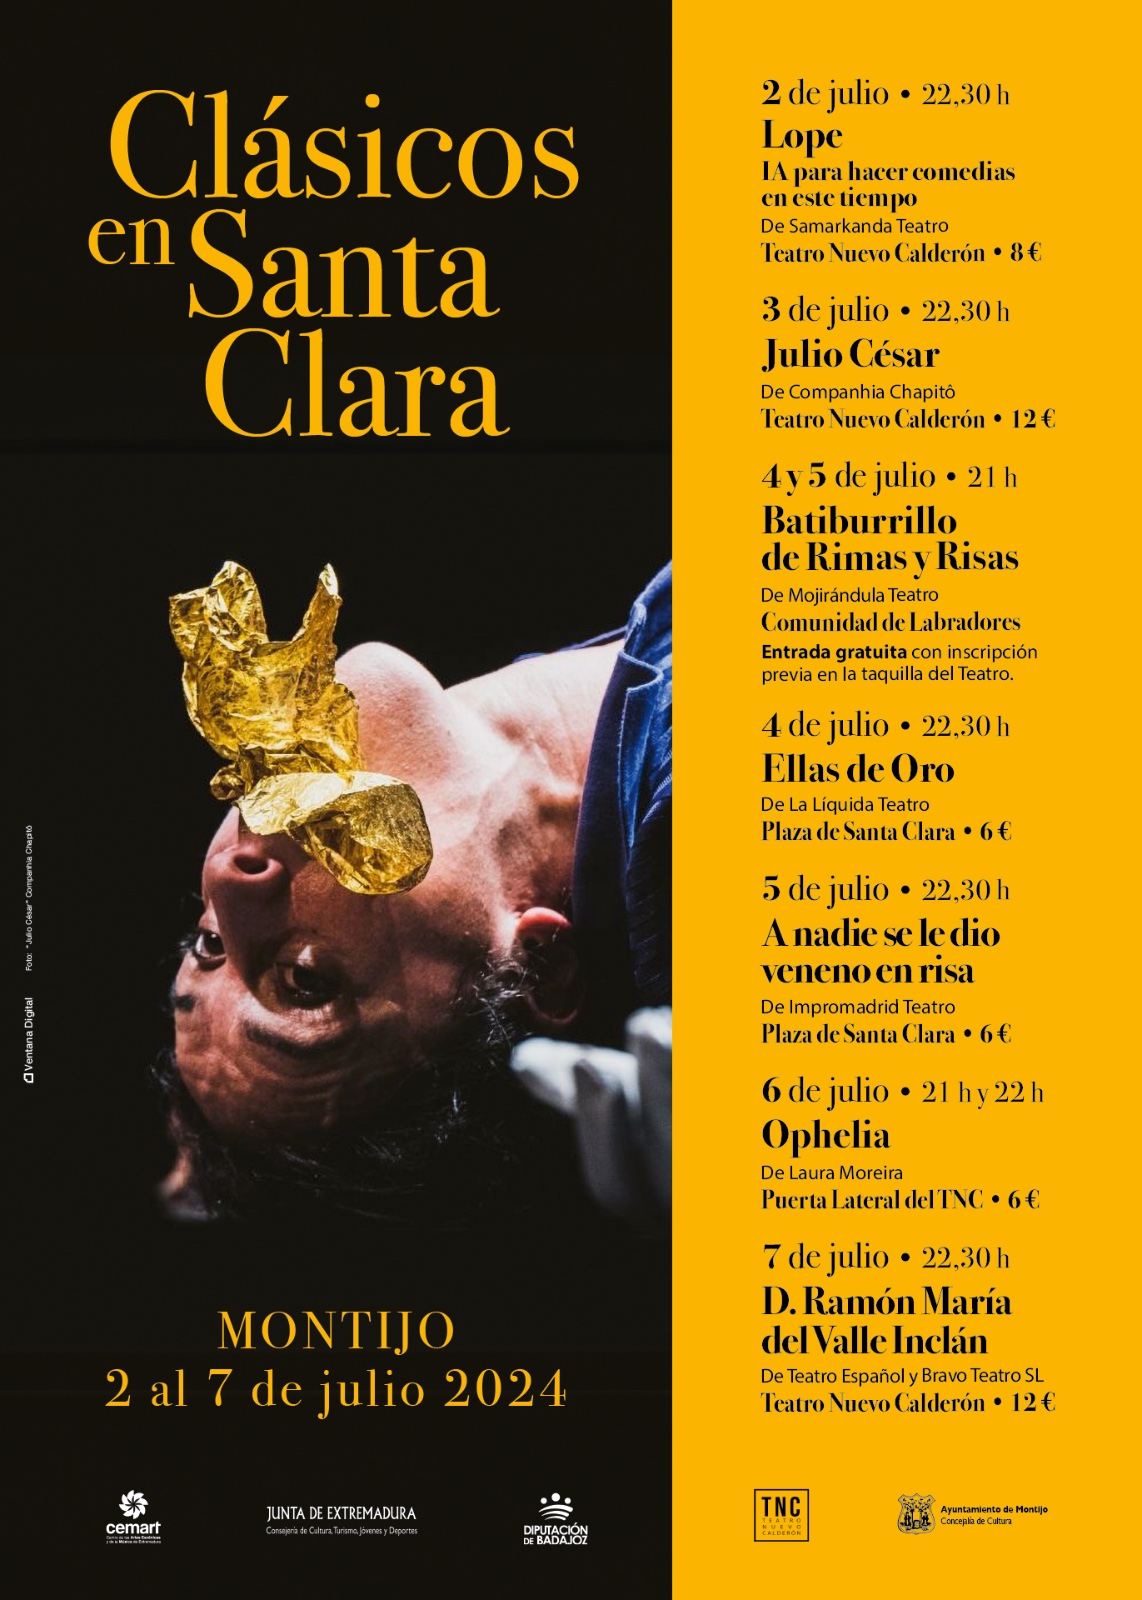 Image 4 of article Siete representaciones teatrales conforman el Festival 'Clásicos en Santa Clara' de Montijo